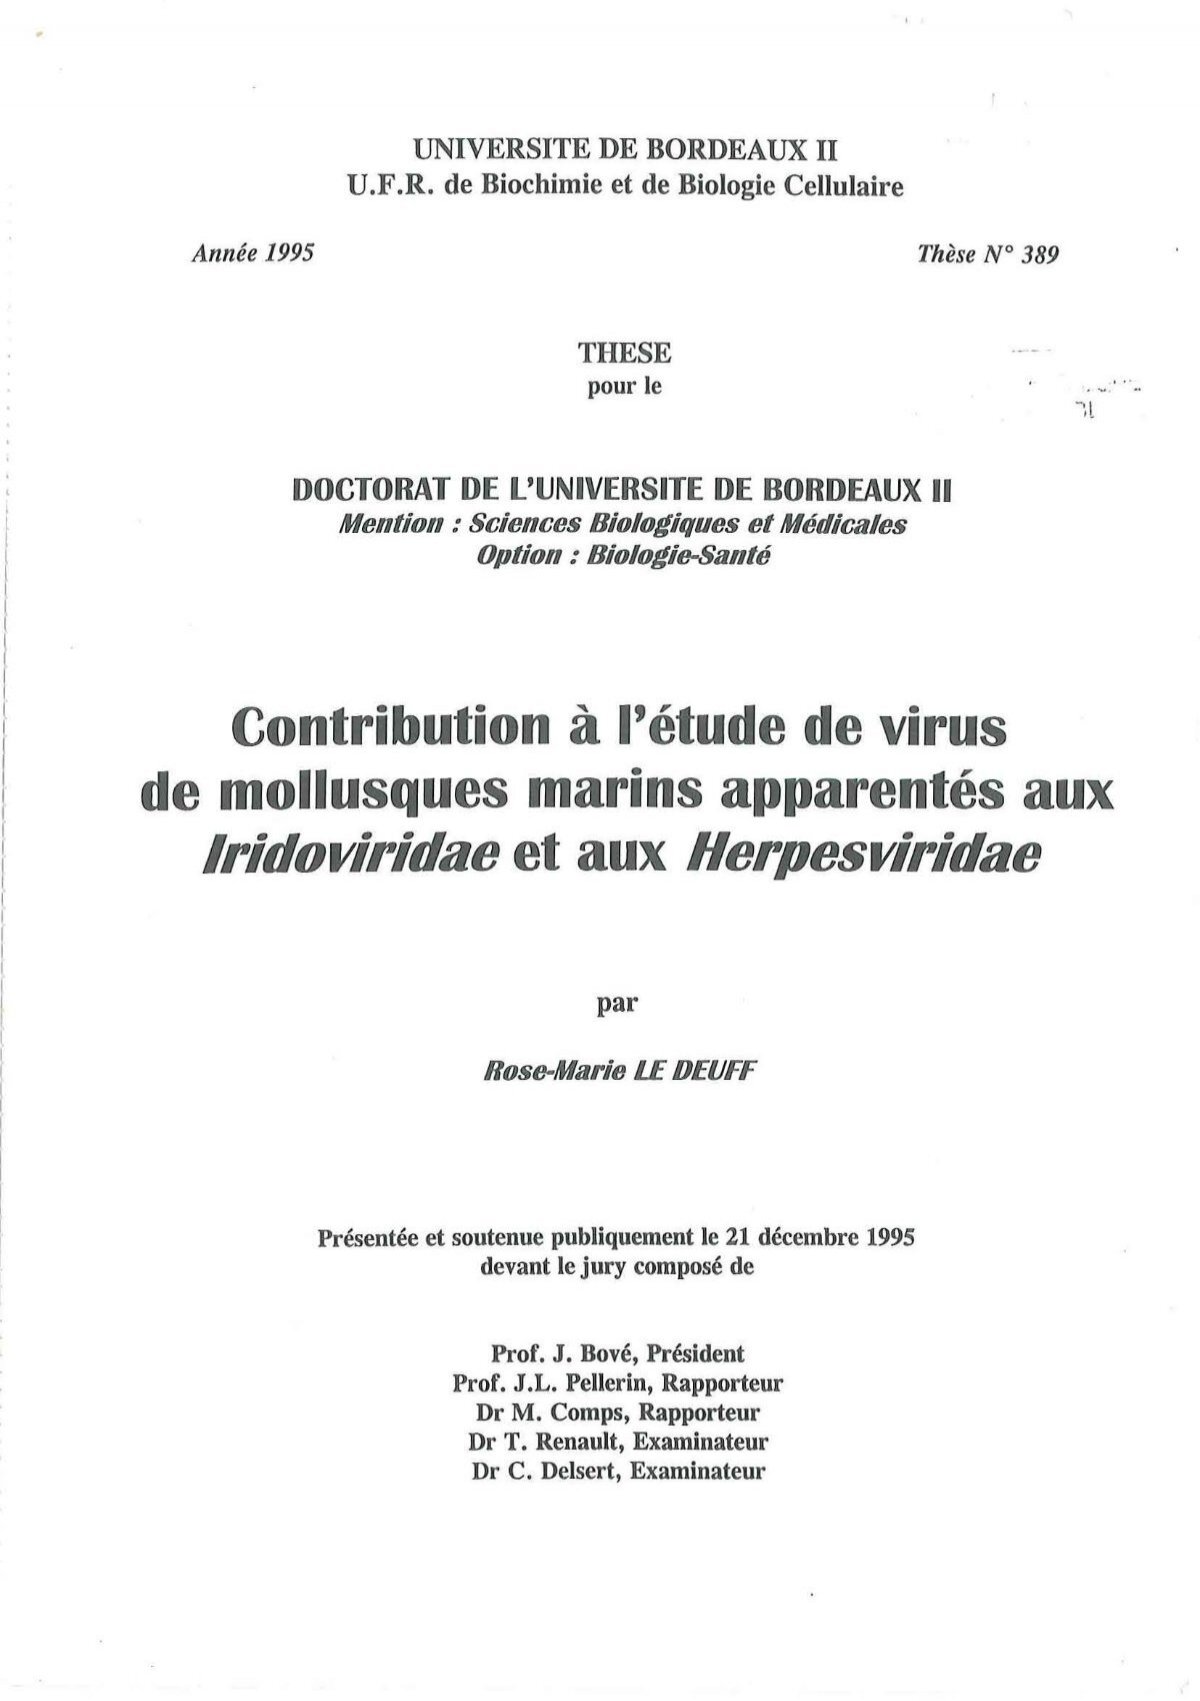 Contribution à l'étude de virus de mollusques marins apparentés